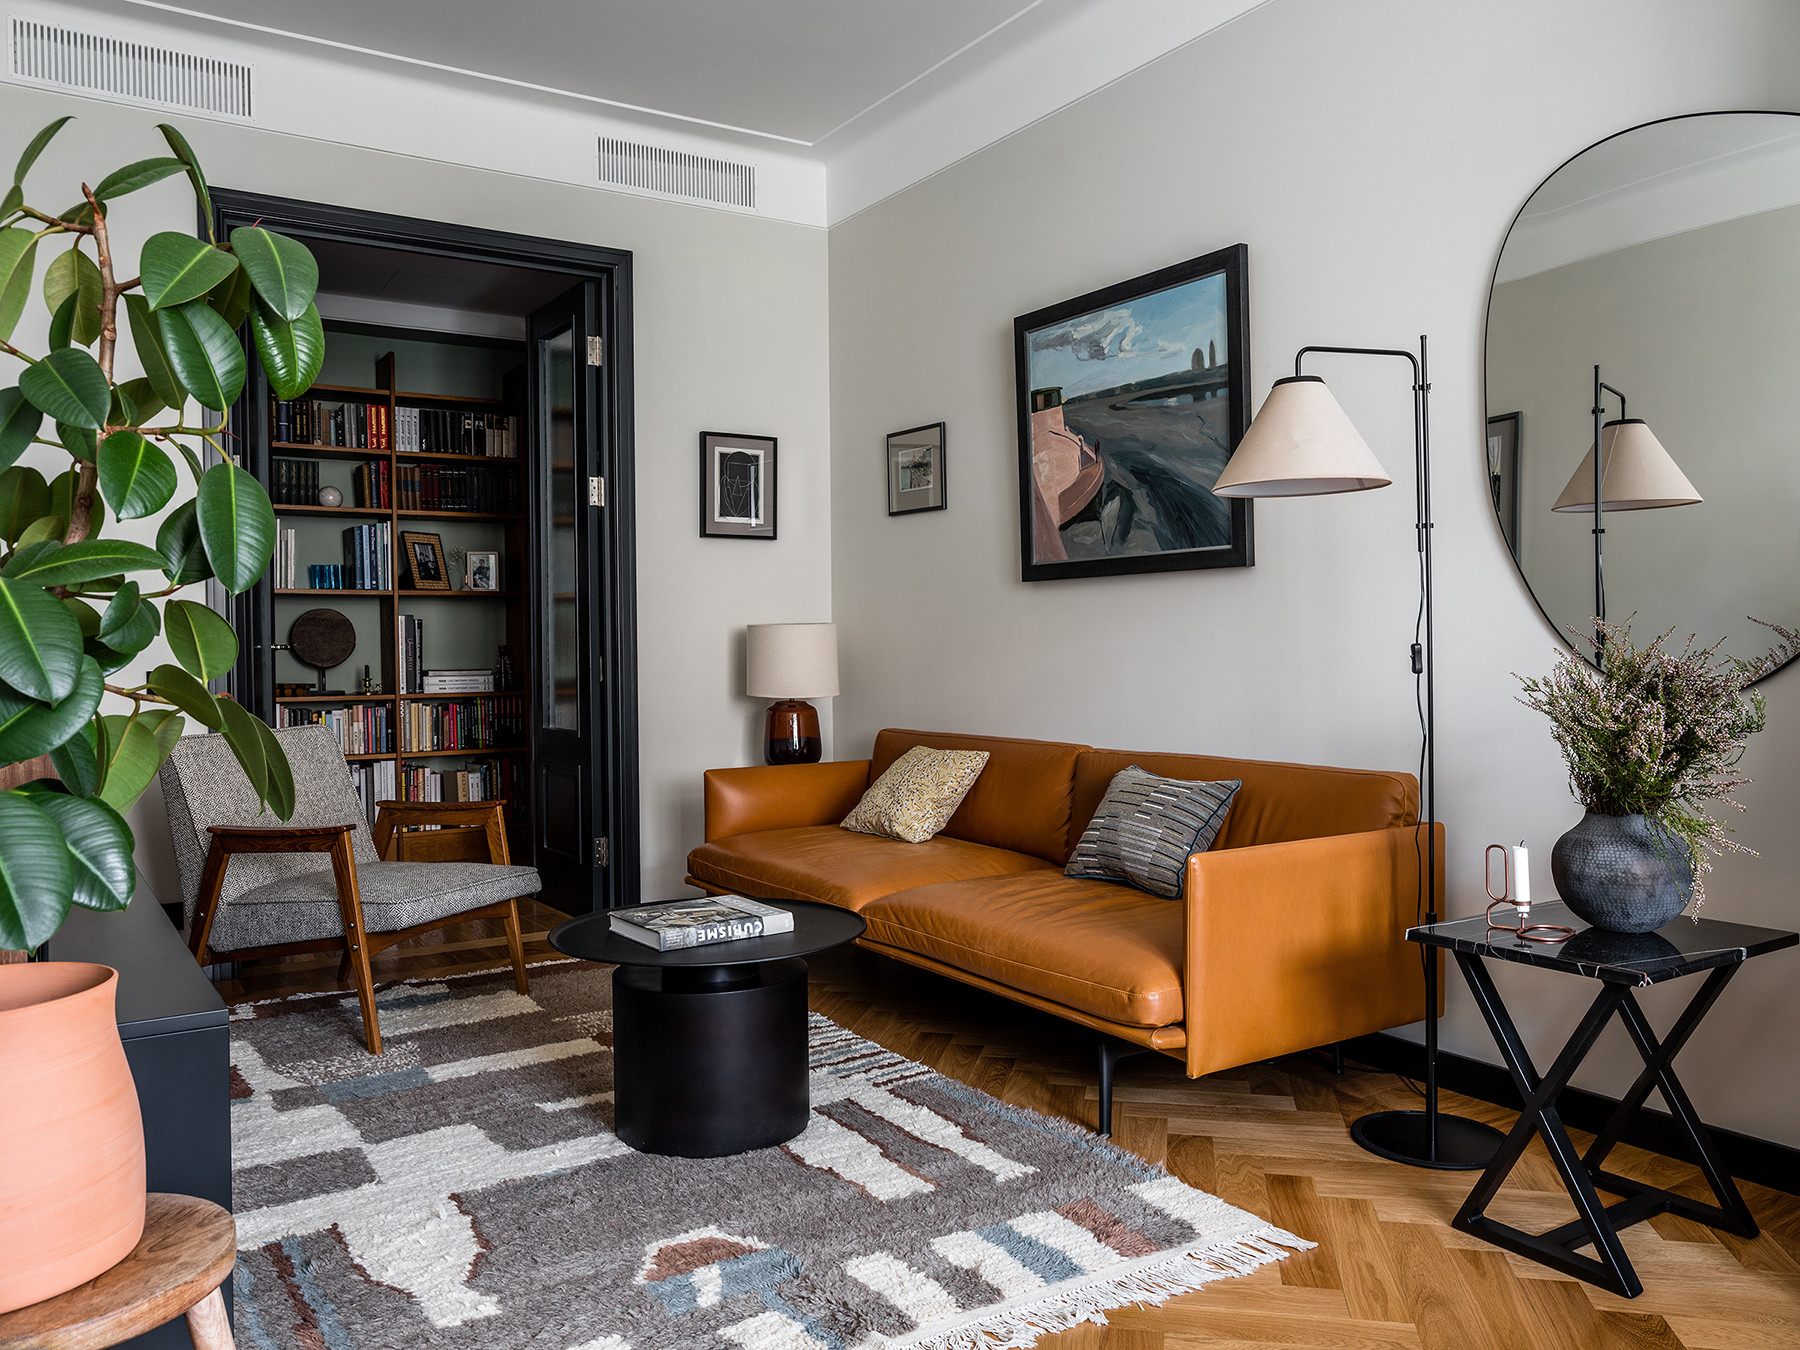 Турецкий стиль в интерьере квартиры - 70 фото